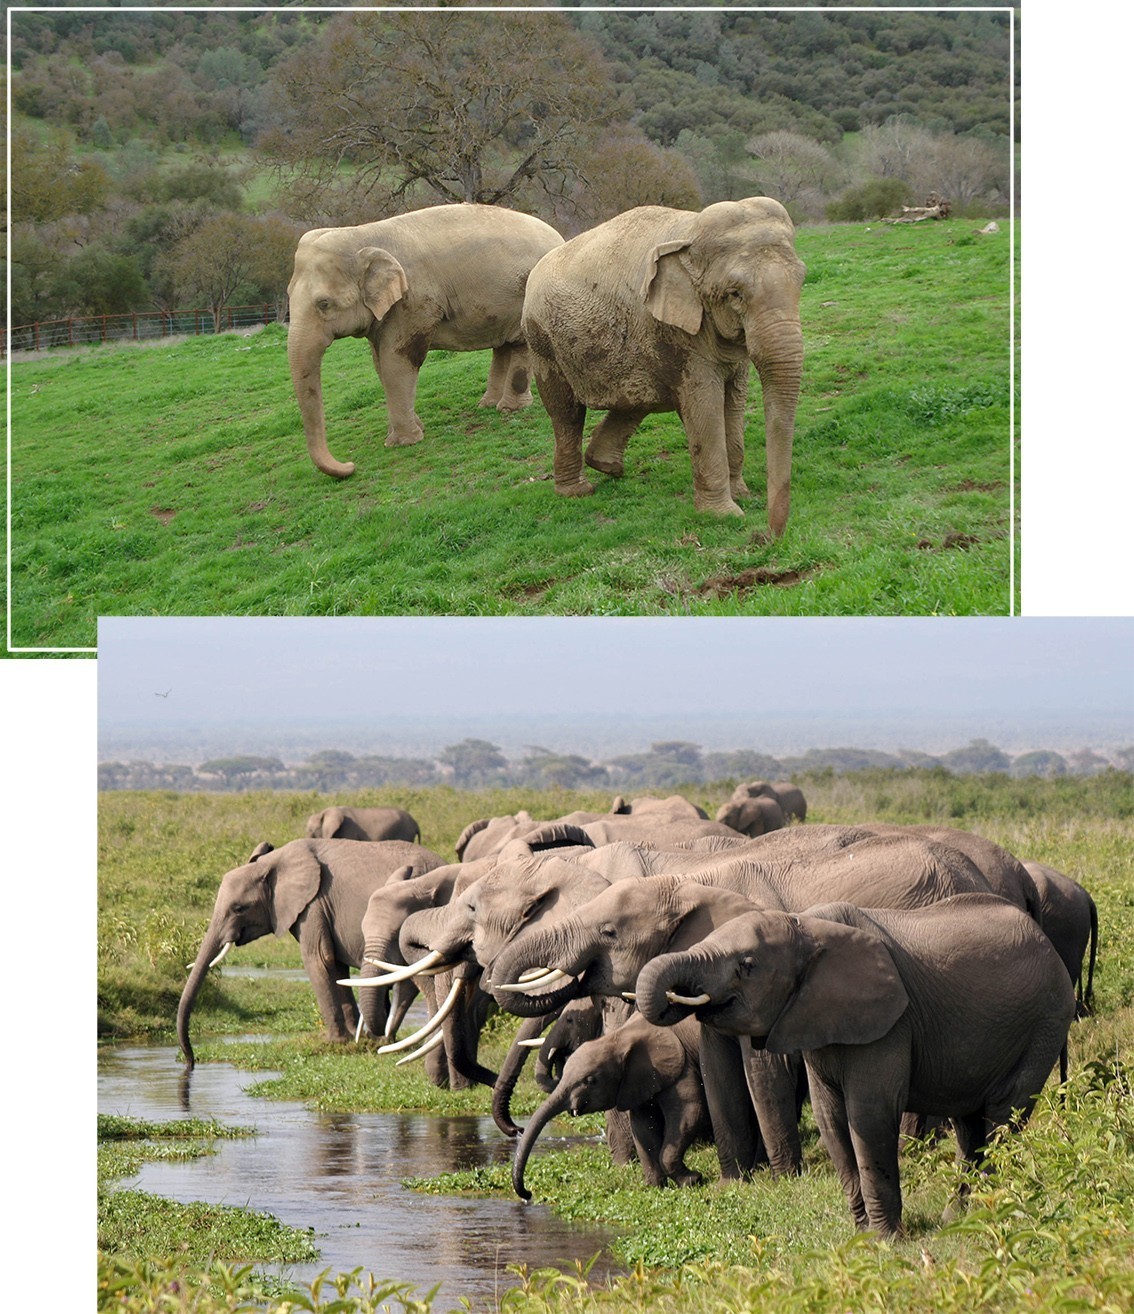 第三,圈养环境下,大象不能生活在自然的社群结构中,甚至是被单独饲养